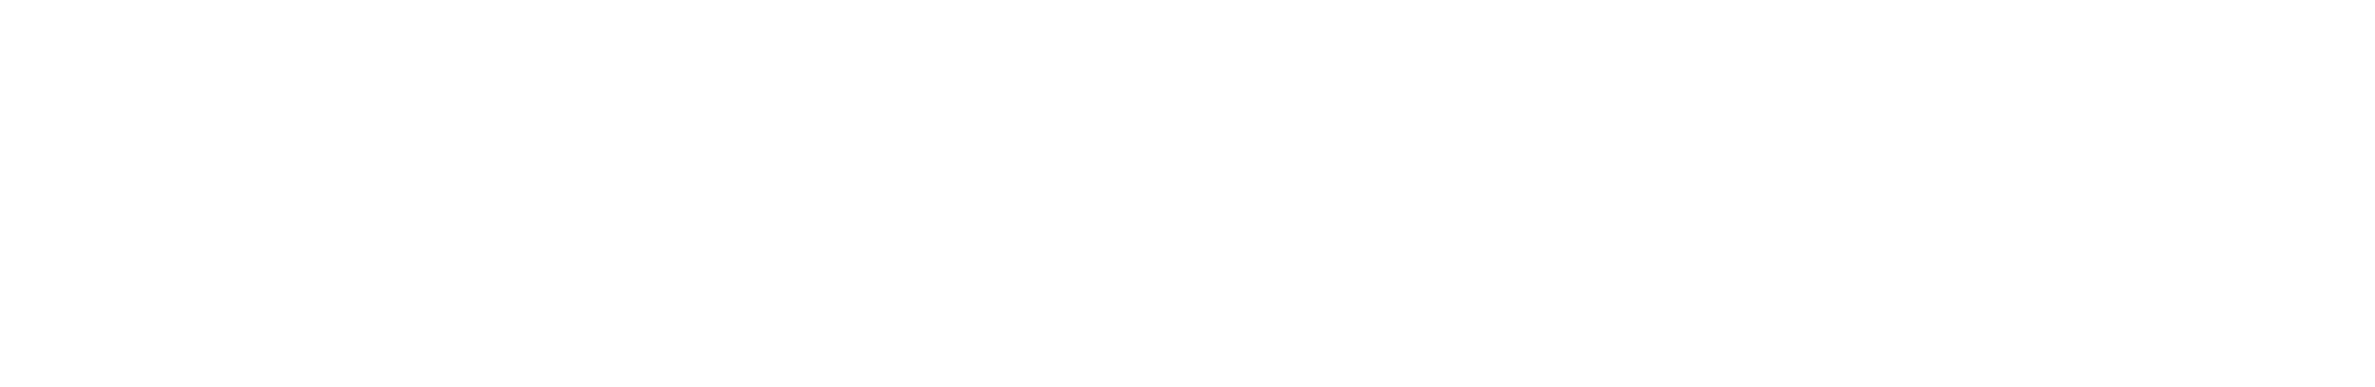 东莞市合菱机电科技有限公司